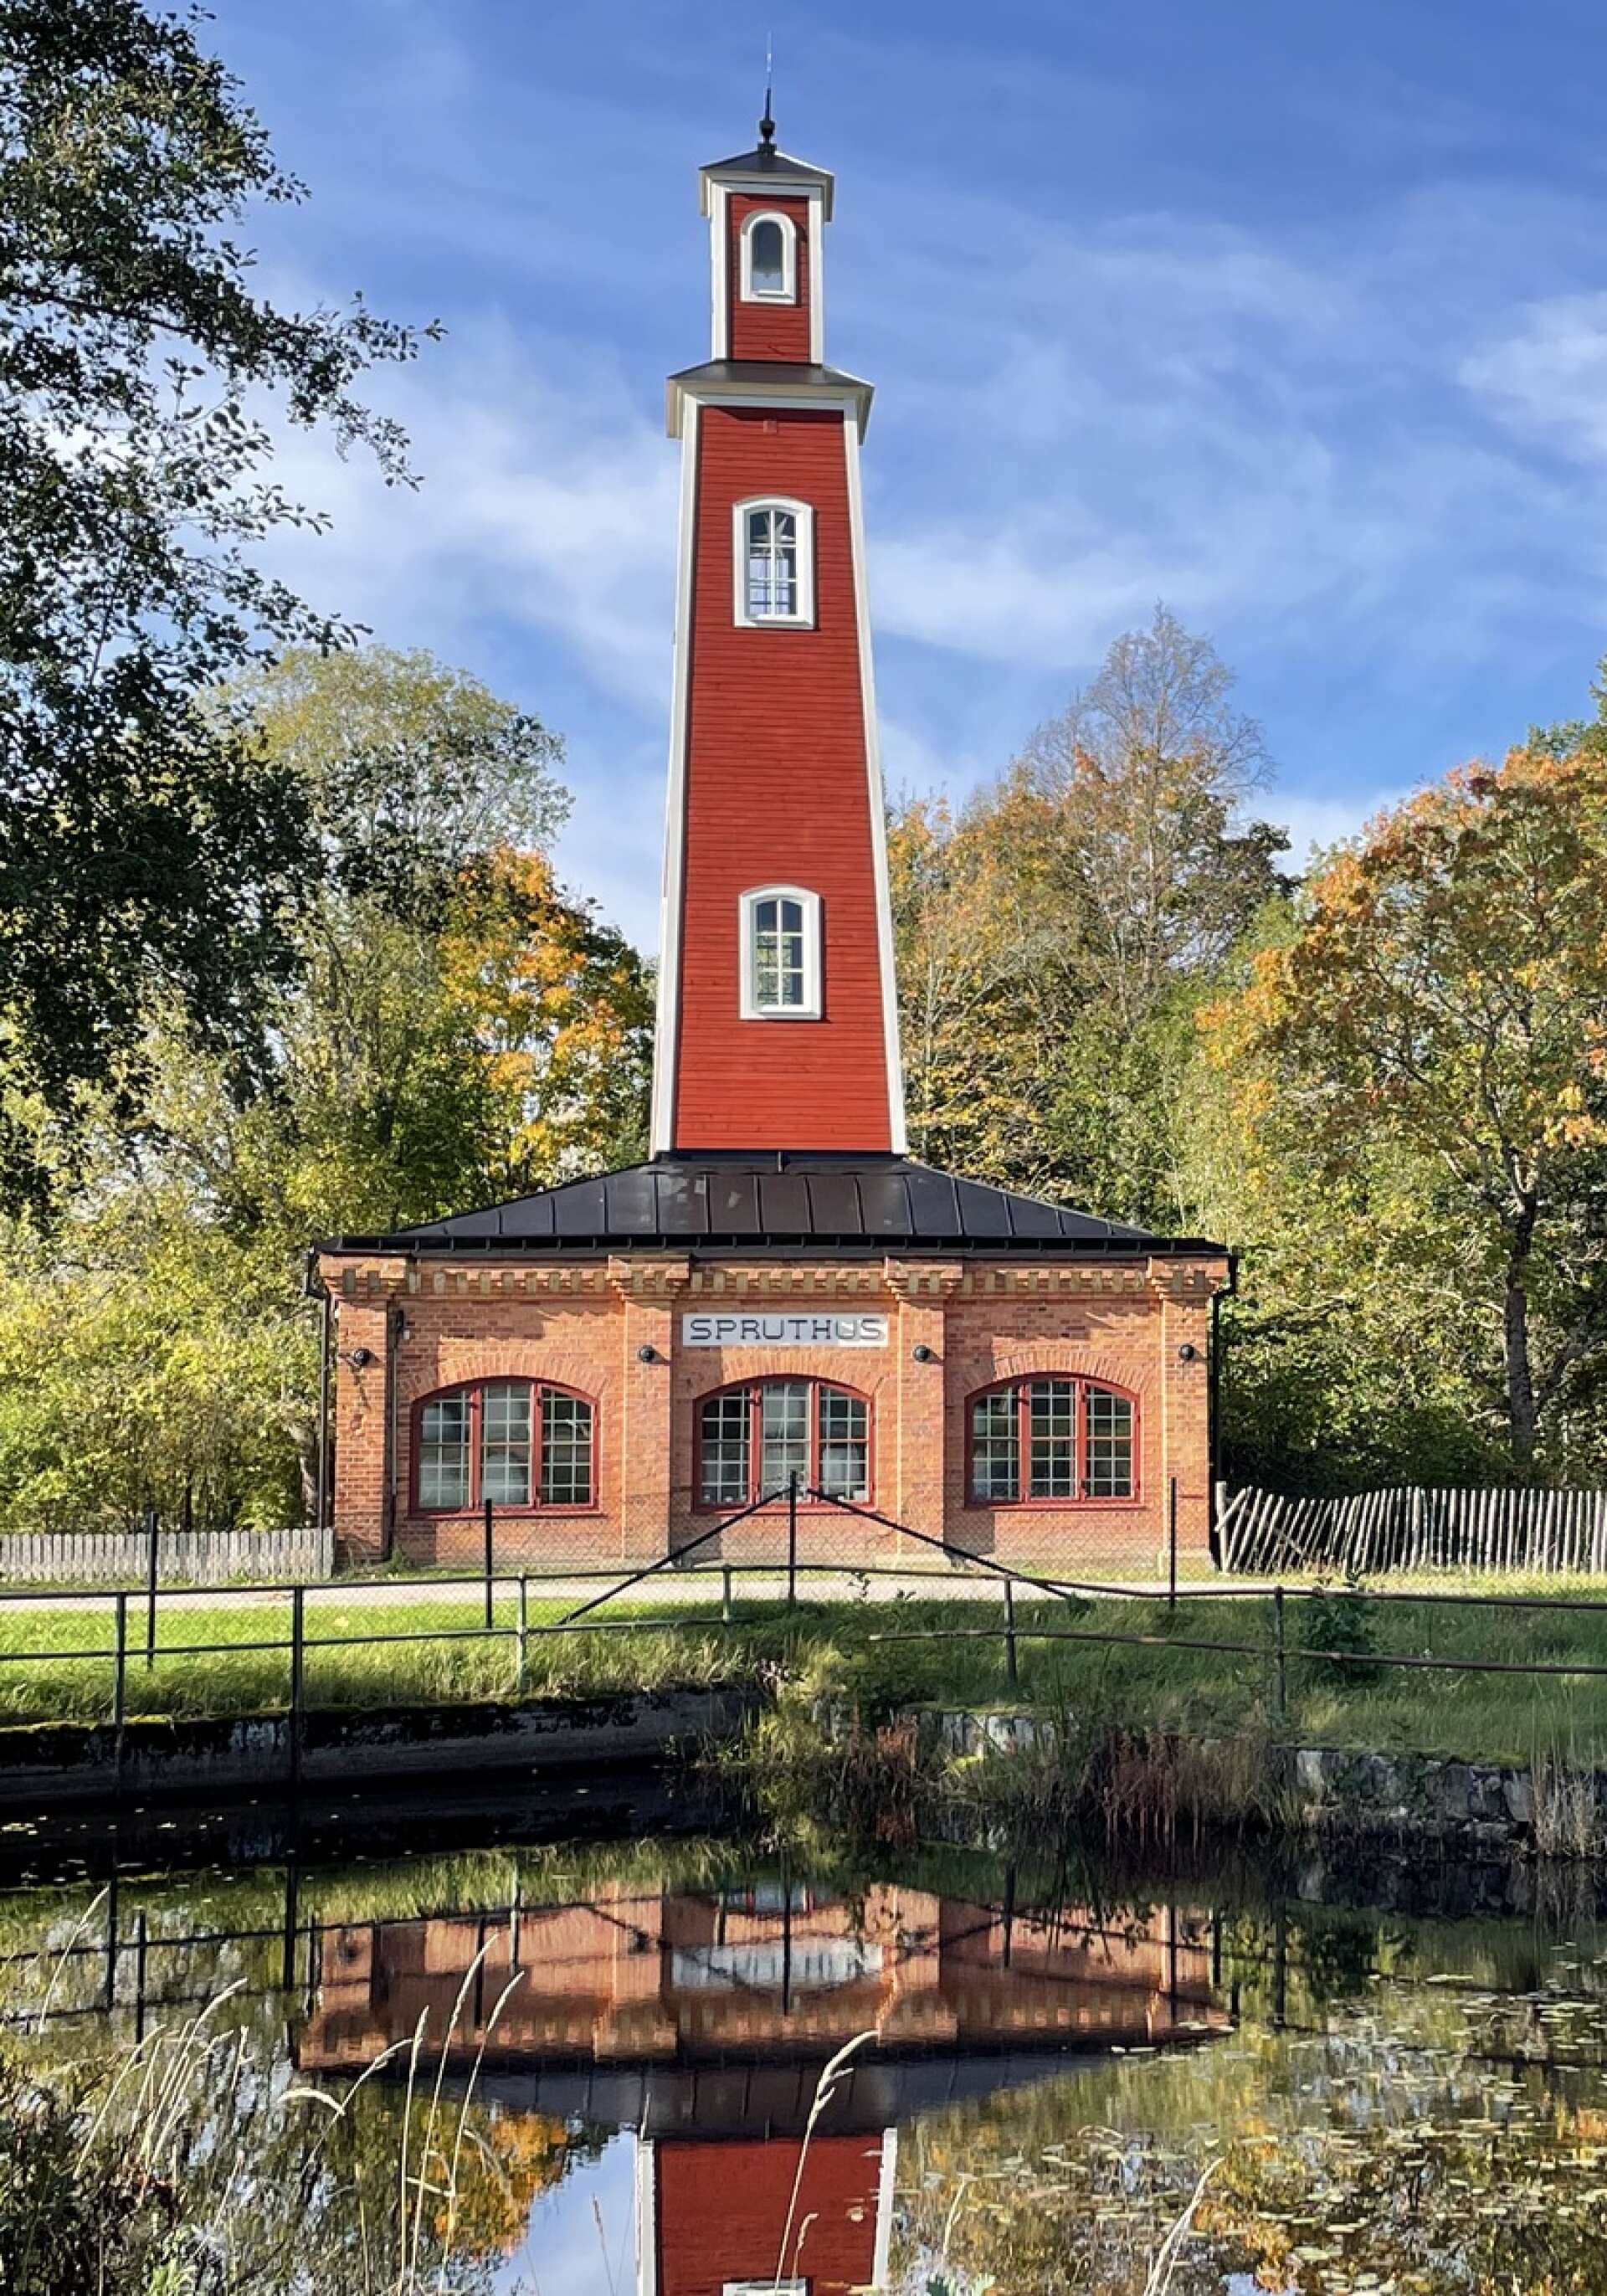 Storfors Spruthus torn och tak har renoverats.